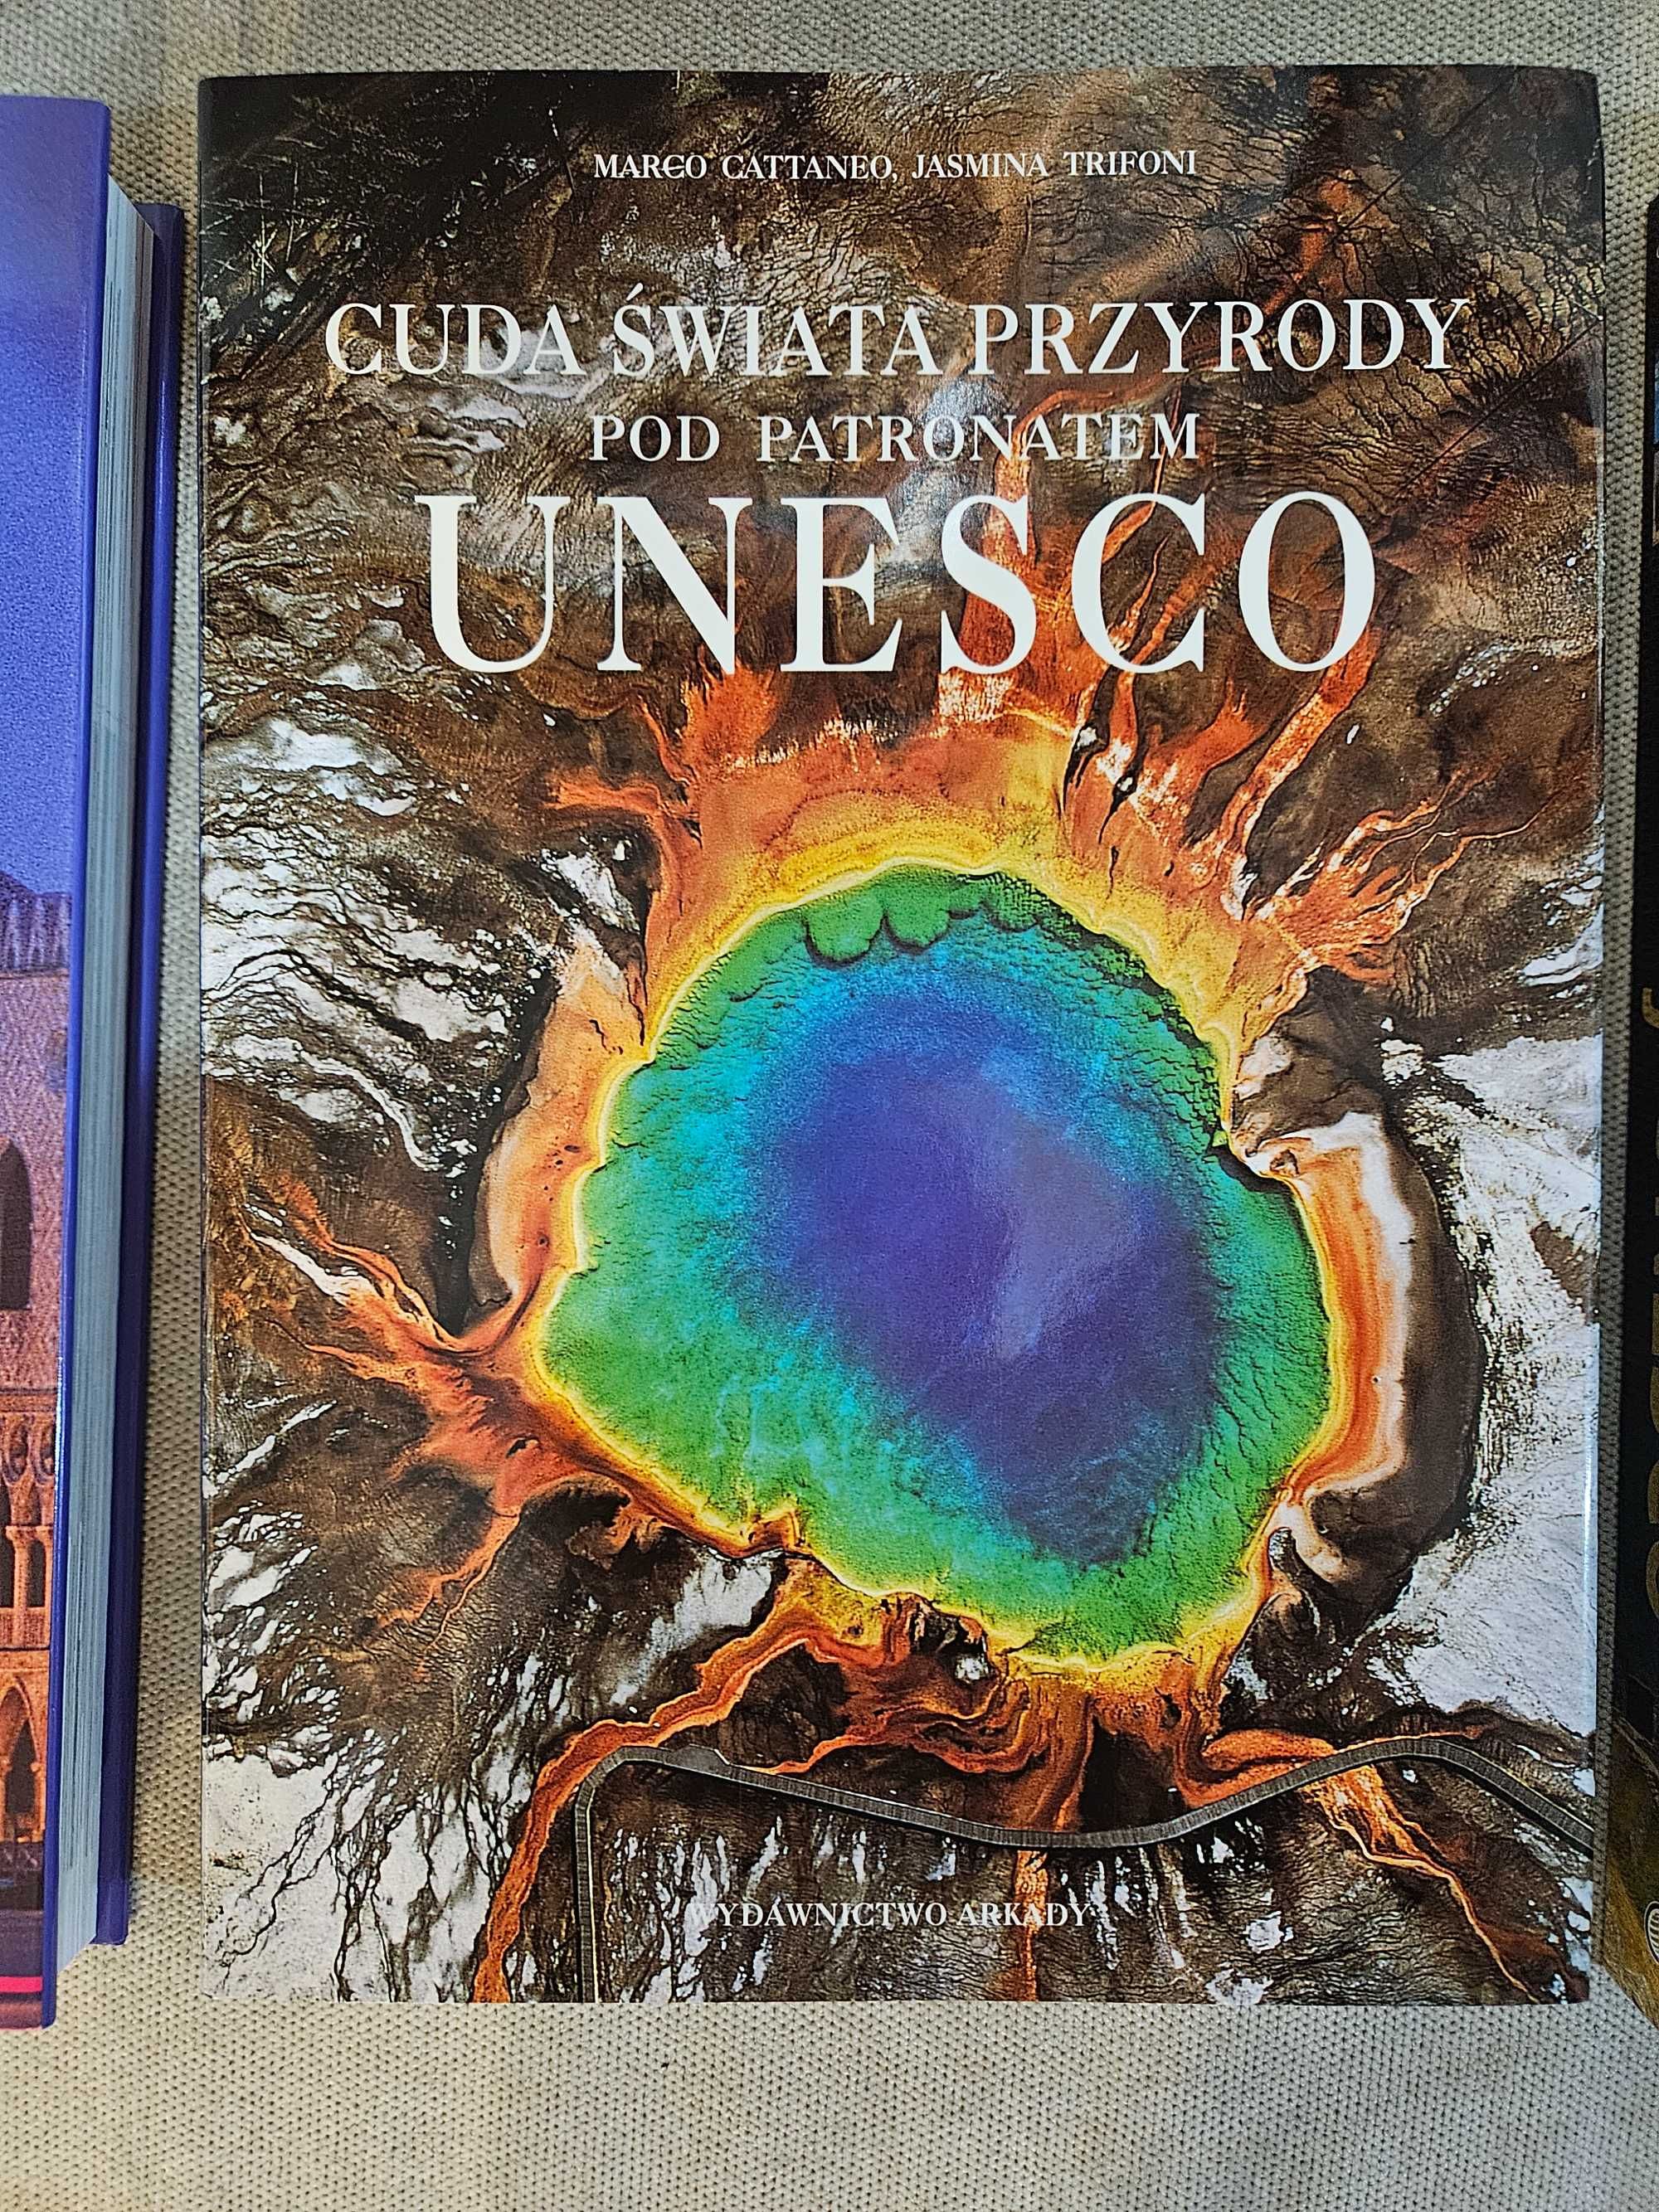 Albumy UNESCO Zabytki/Skarby/Cuda 3 sztuki jak w opisie (stan idealny)